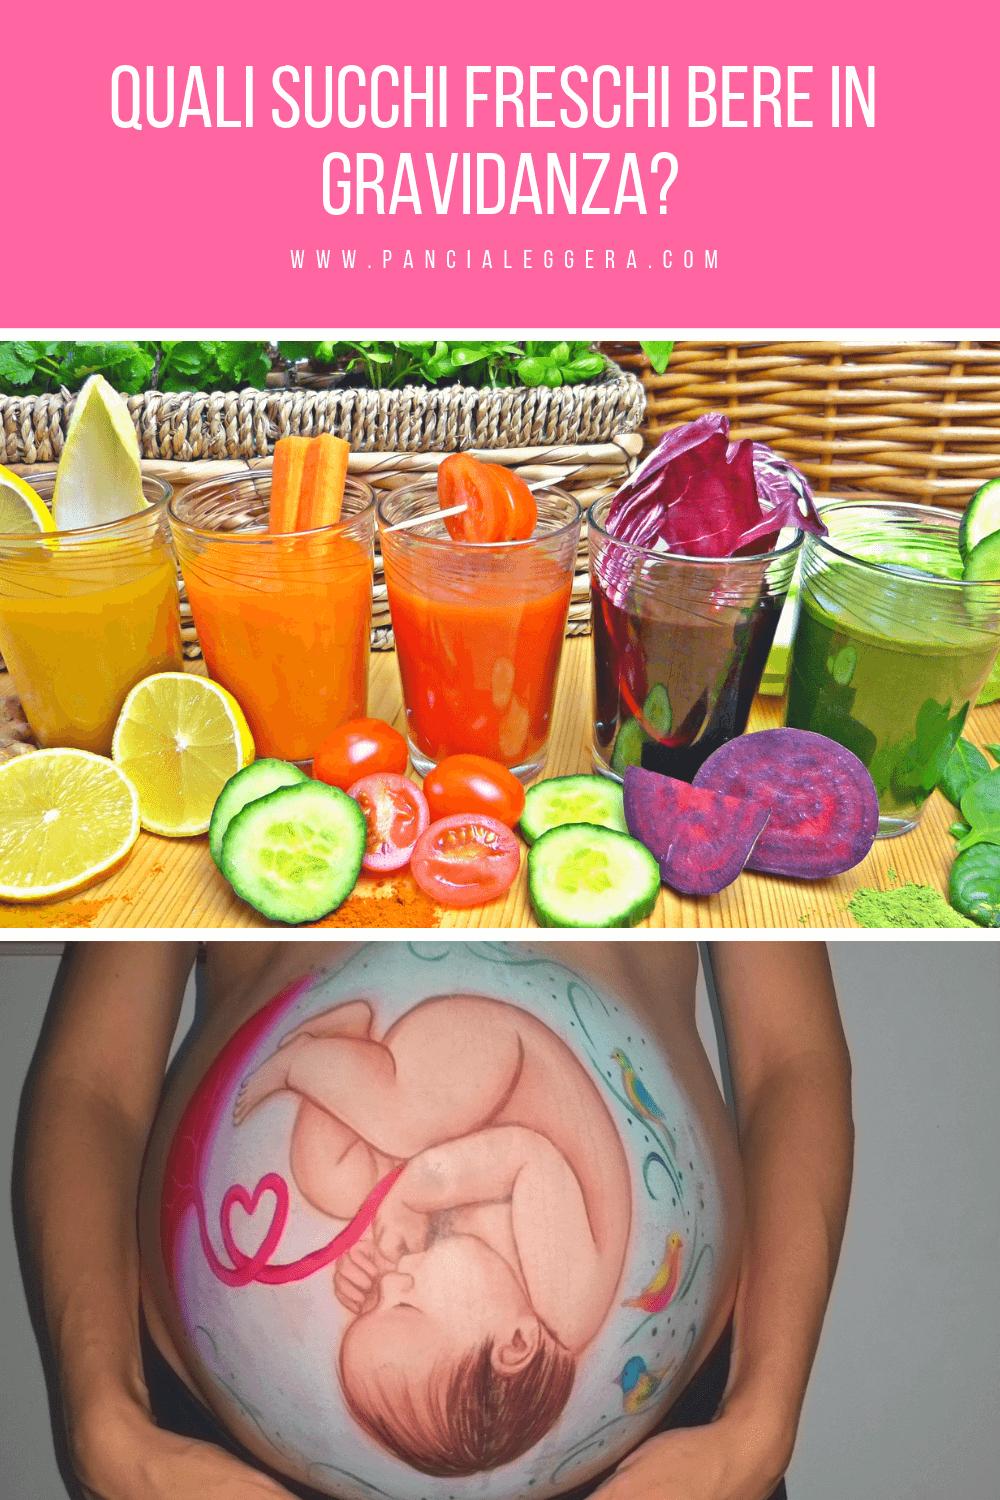 Succhi vegetali freschi in gravidanza – quali bere?